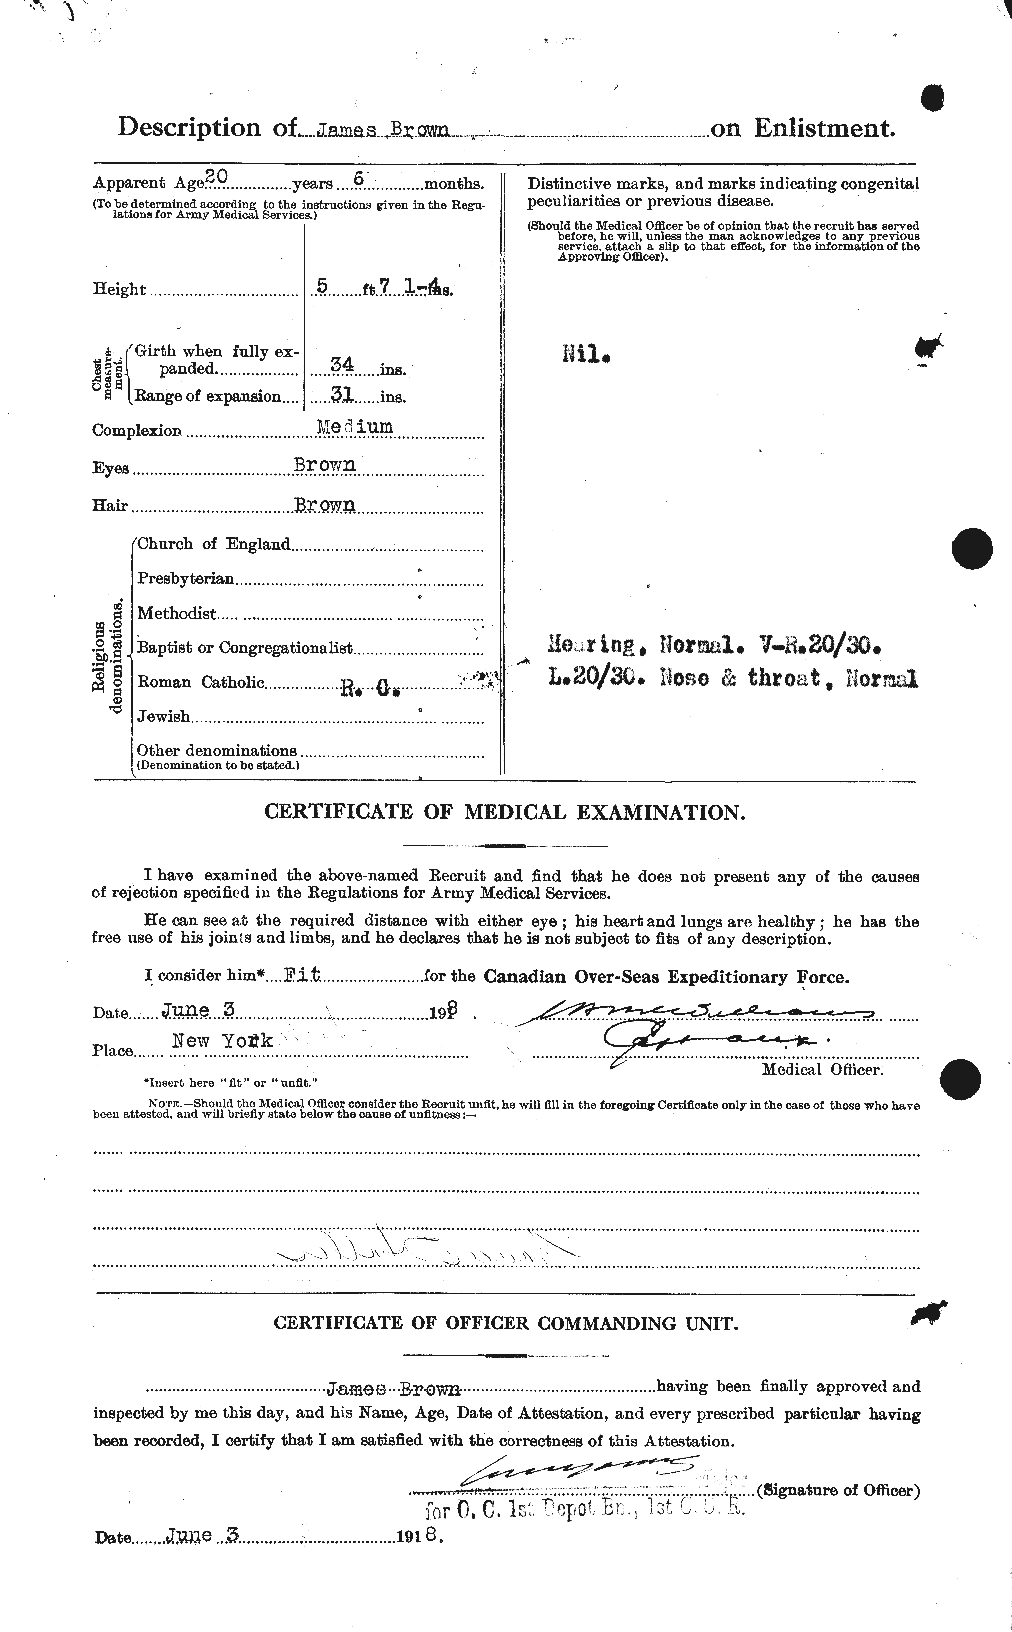 Dossiers du Personnel de la Première Guerre mondiale - CEC 265772b